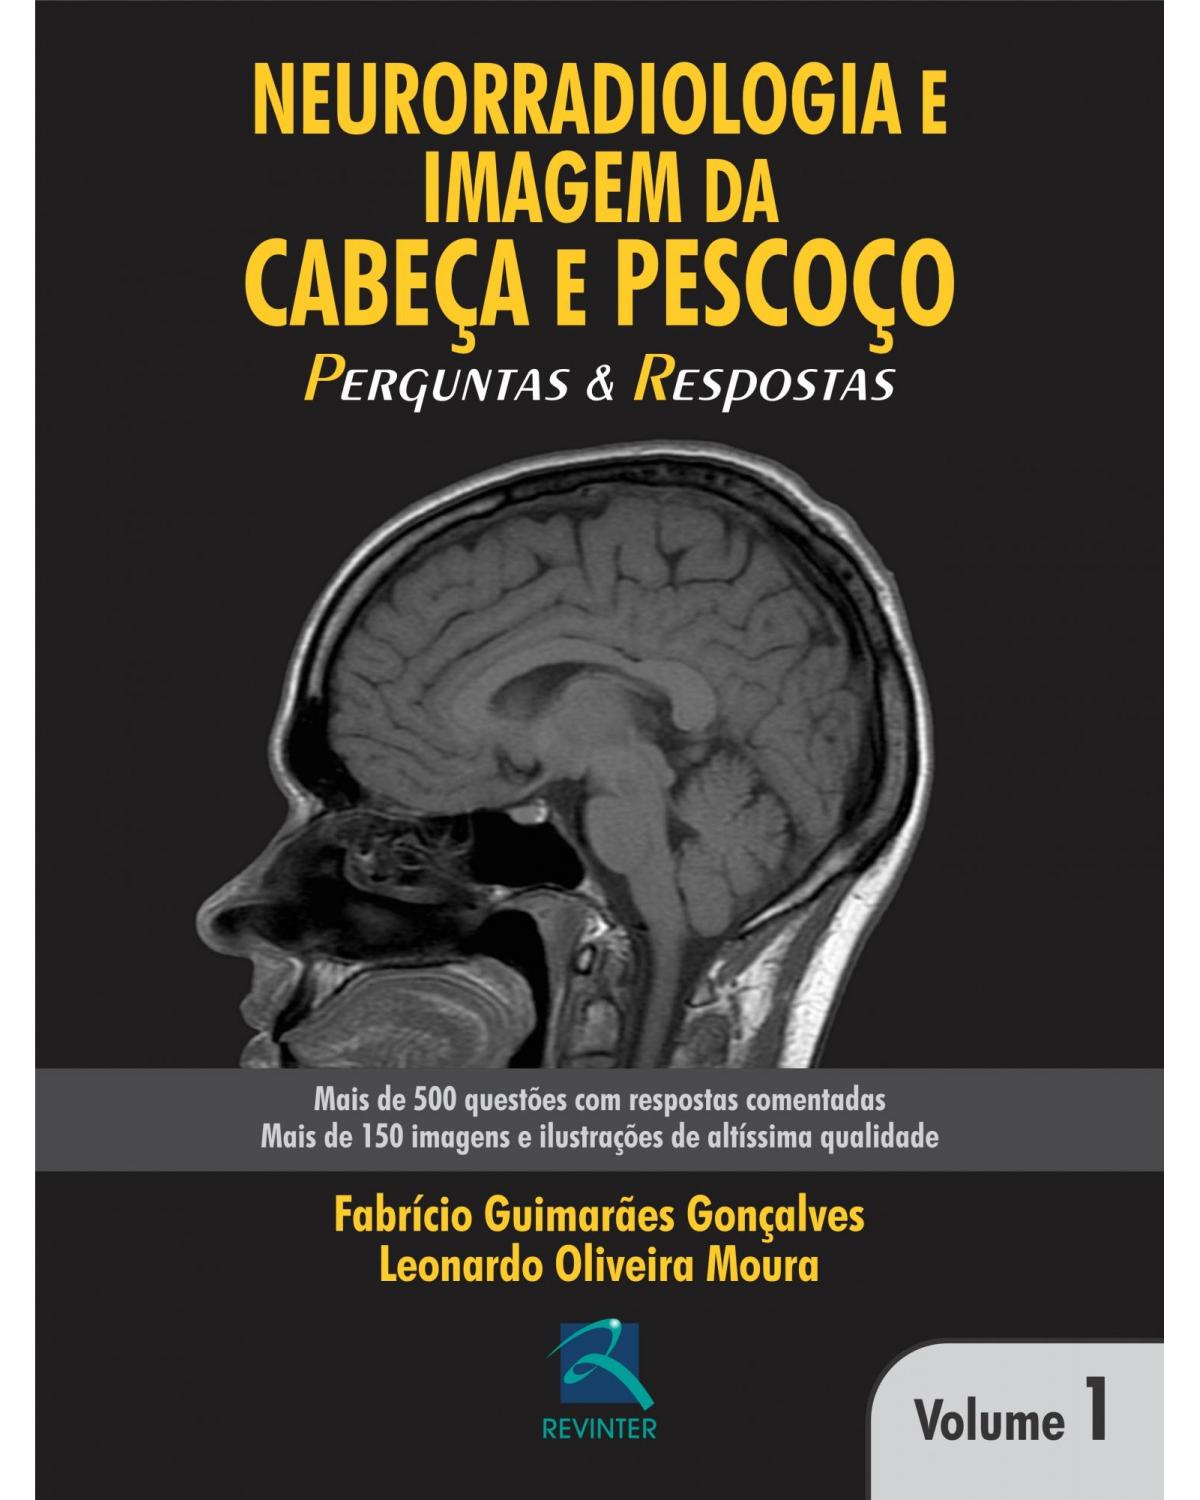 Neurorradiologia e imagem da cabeça e pescoço - Volume 1: perguntas e respostas - 1ª Edição | 2013